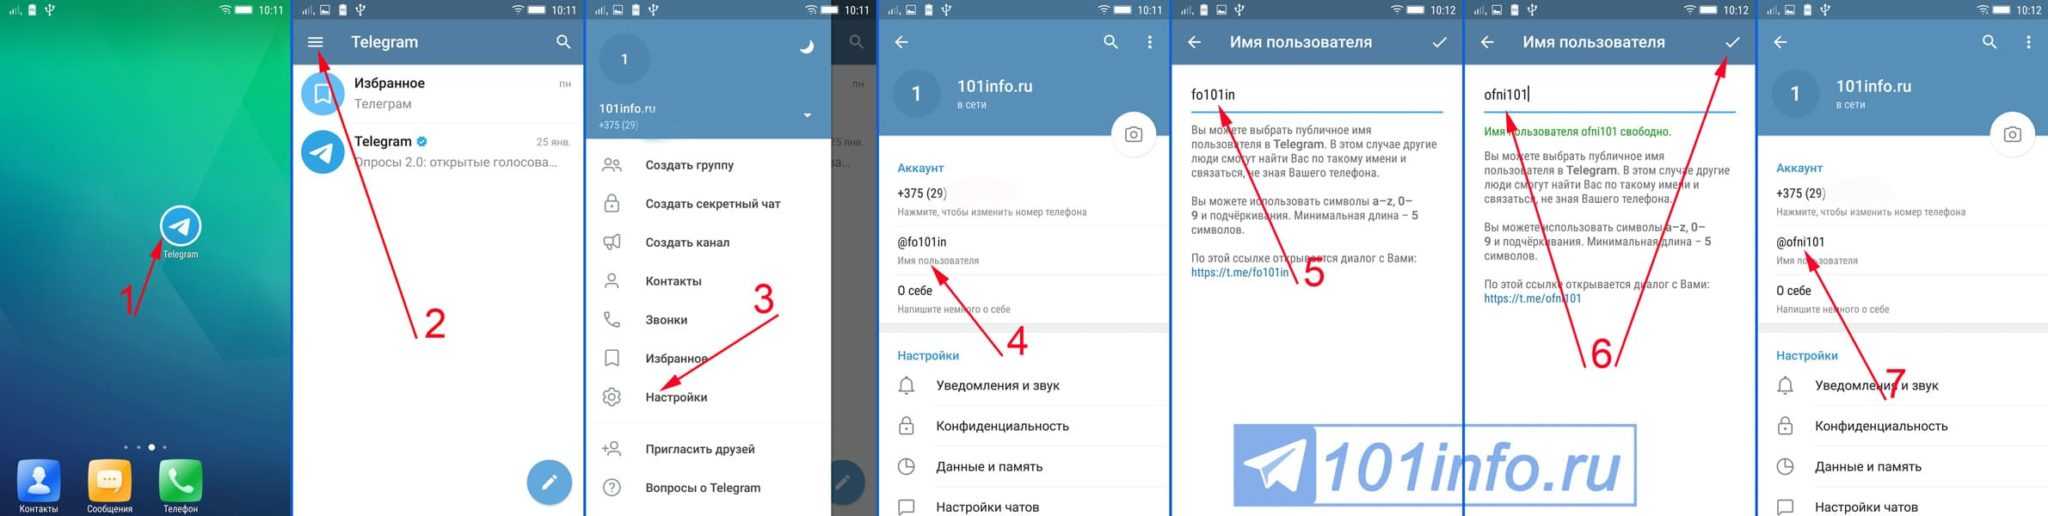 Как настроить телеграмм на андроид на русском языке бесплатно фото 89